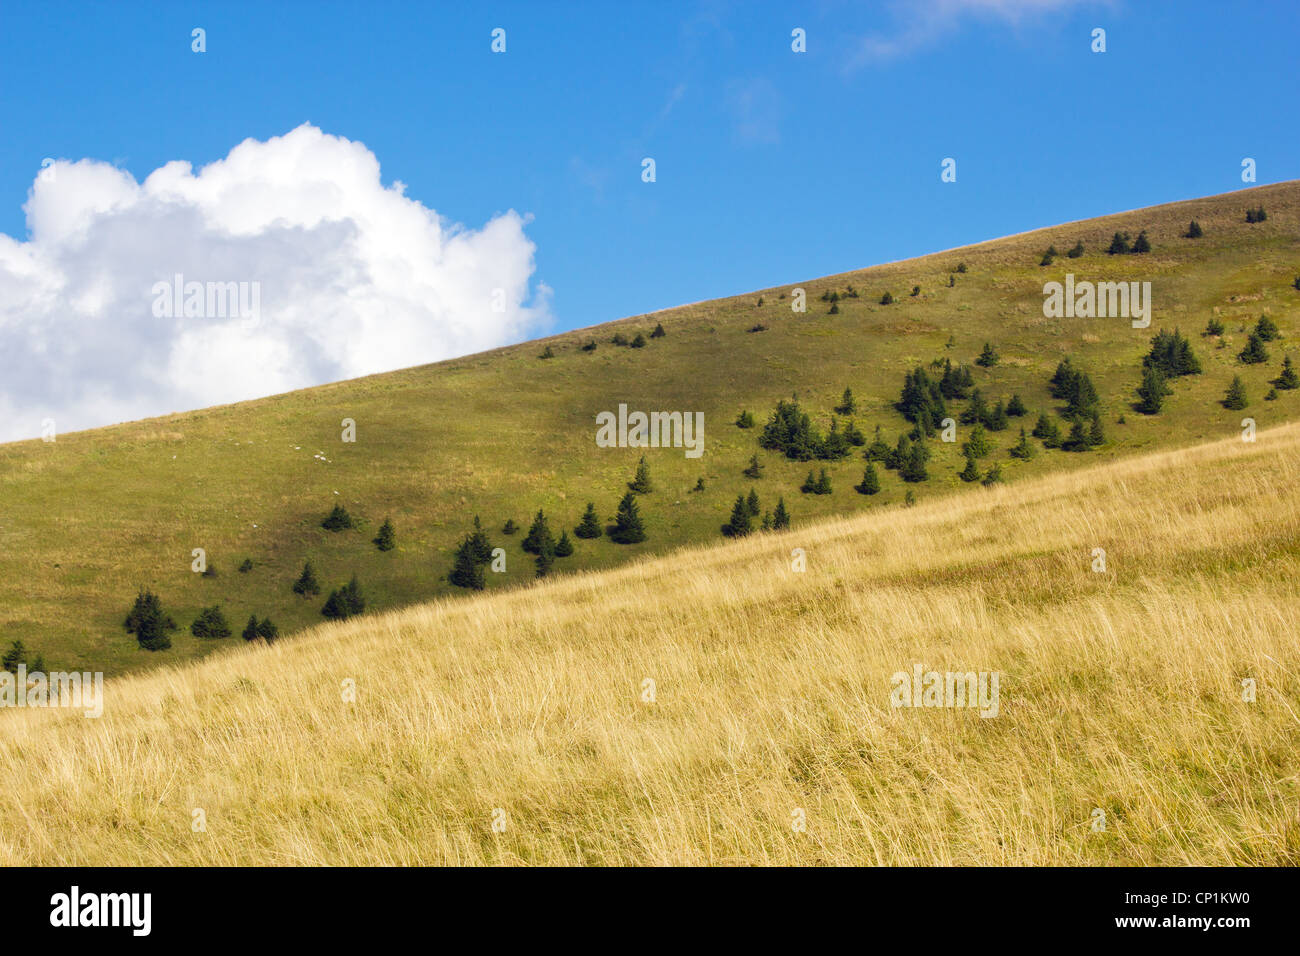 Mountain landscape, Velka Fatra, Slovakia Stock Photo